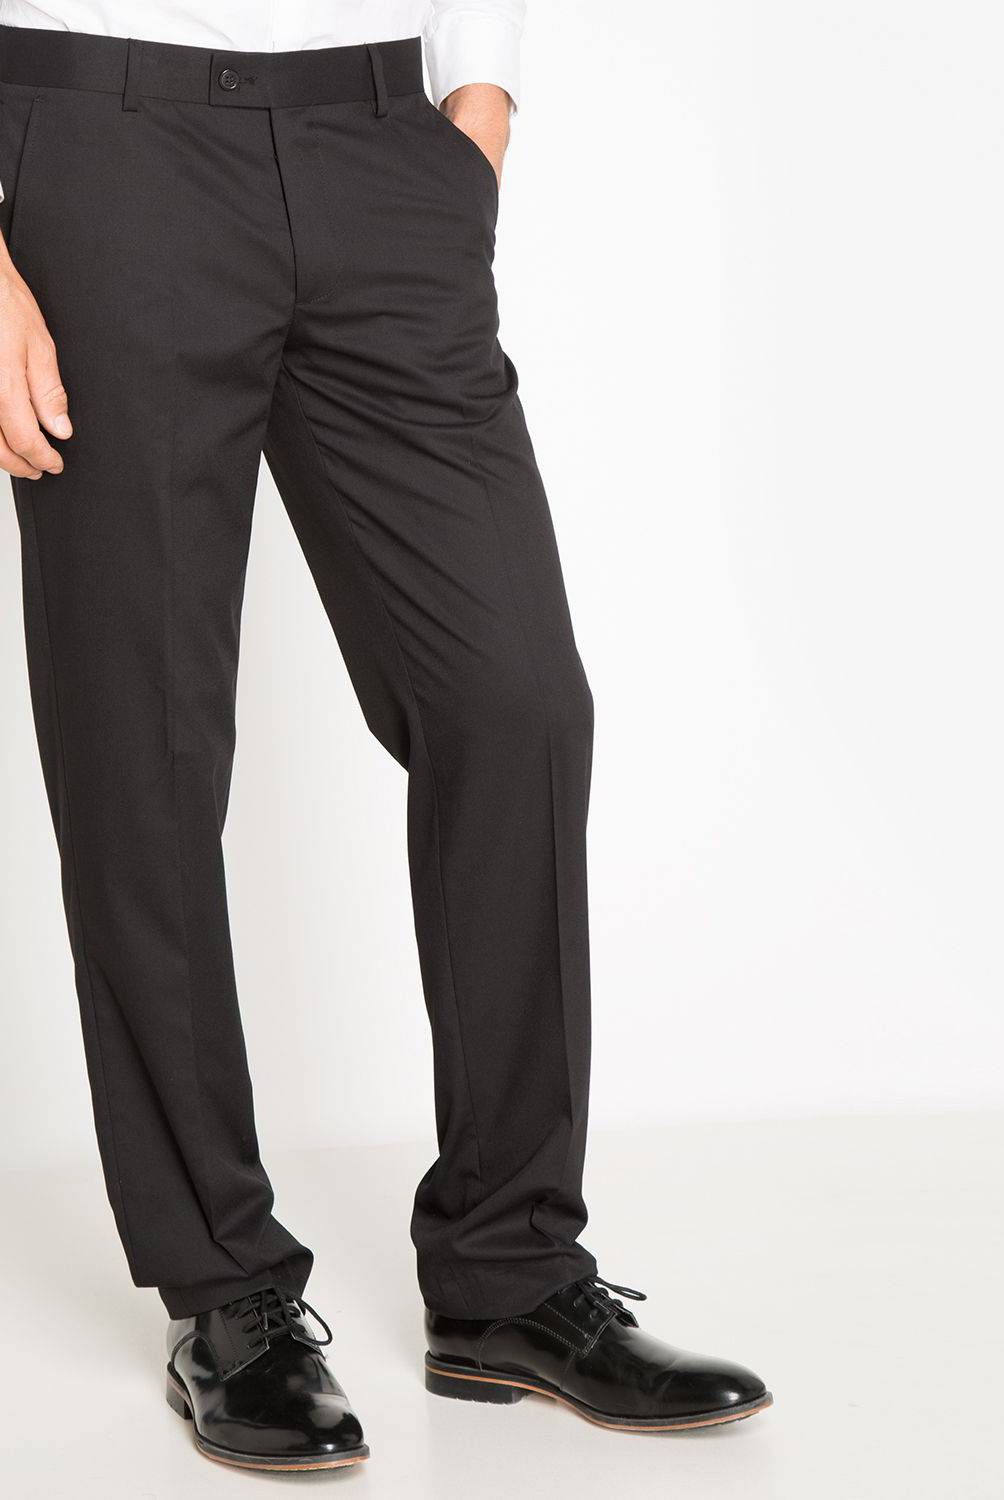 NEWPORT - Pantalon de Vestir Slim Hombre